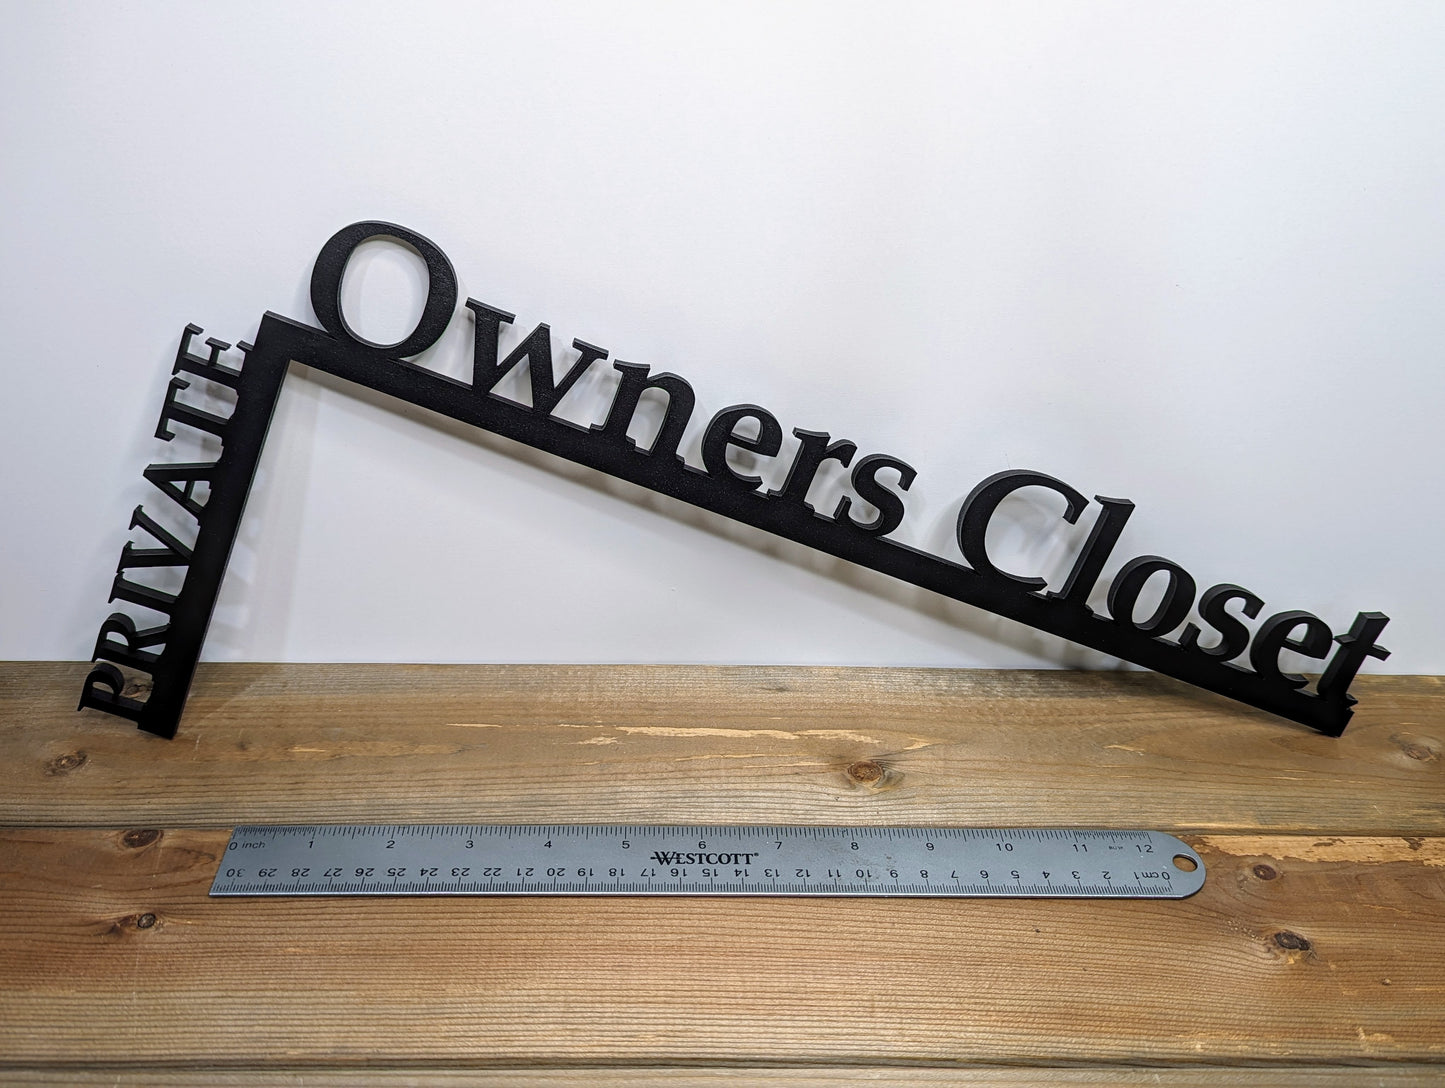 Owner's Closet "Over the Door" Door Topper Sign